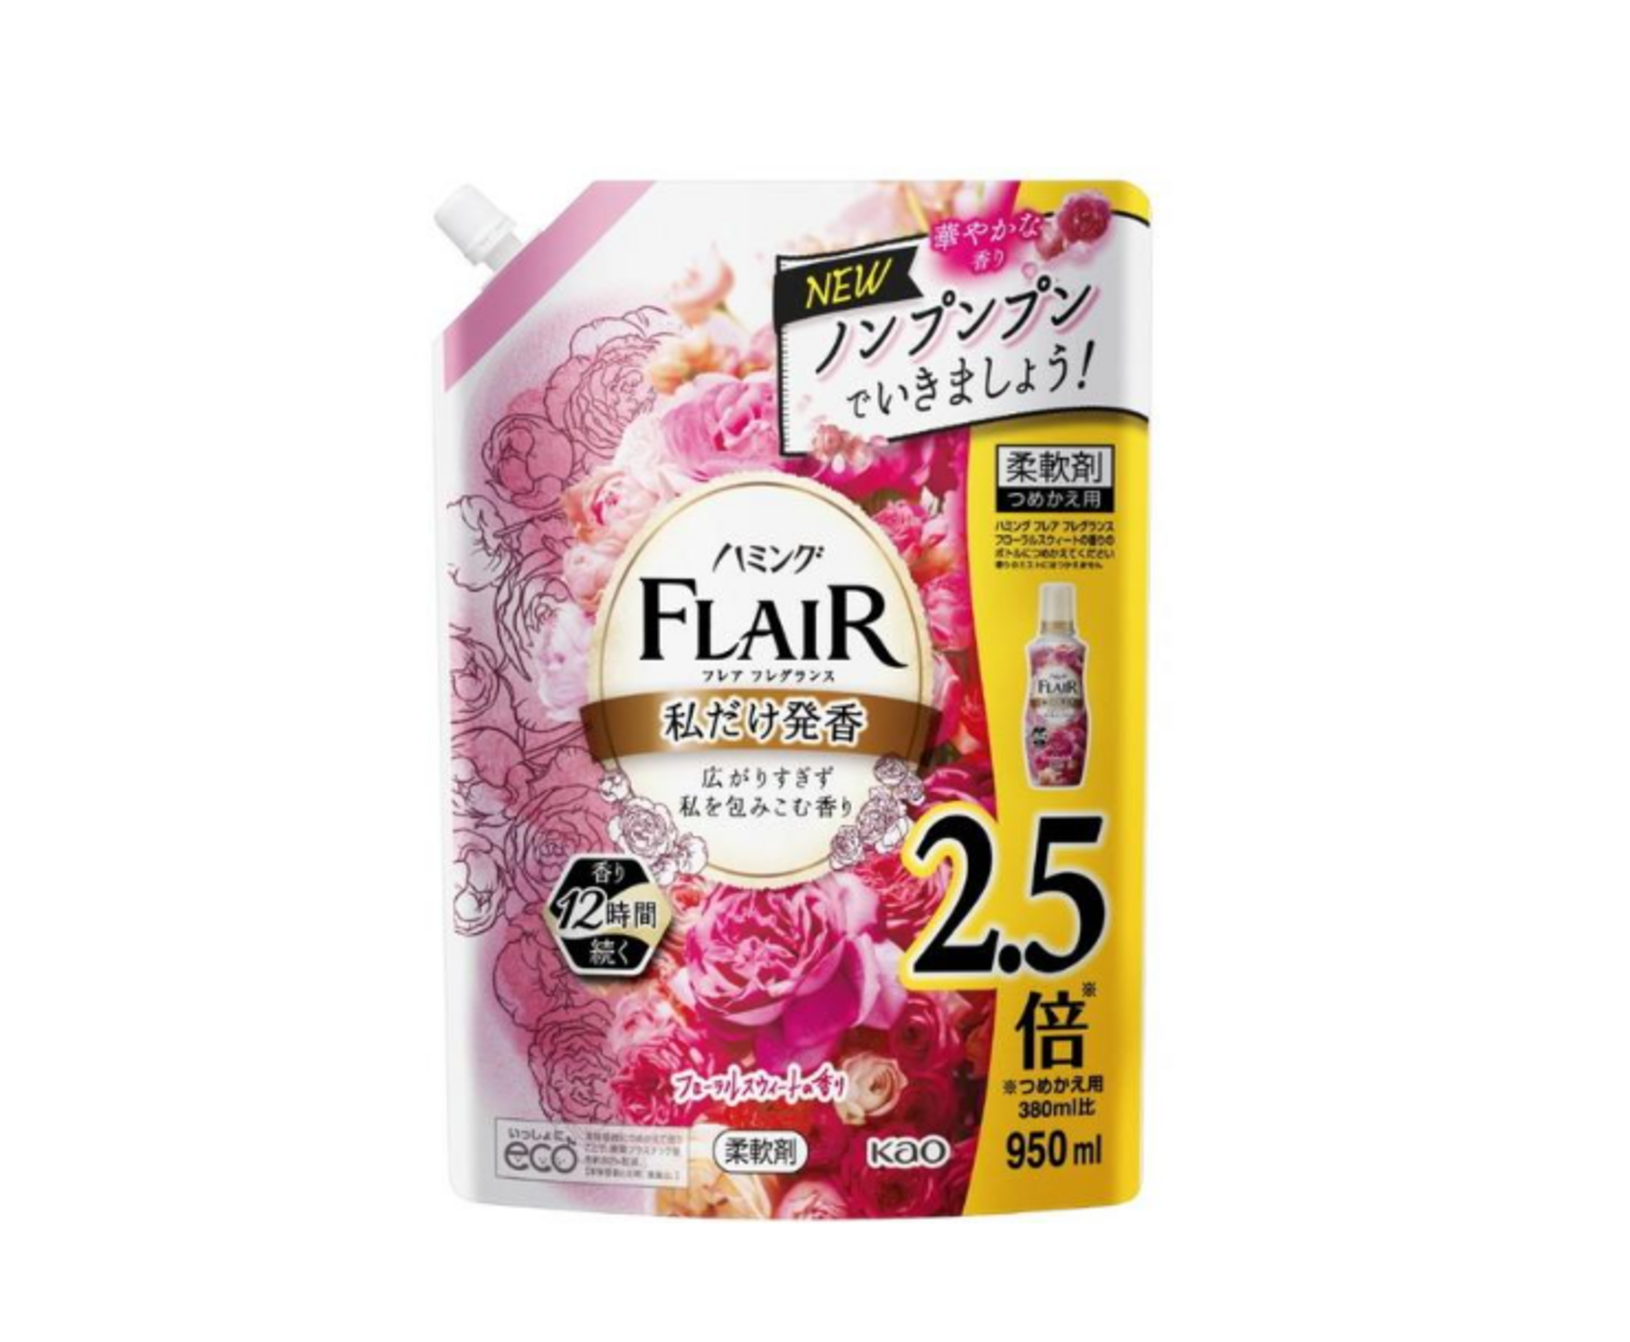 Kao Flair Fragrance Floral & Sweet Кондиционер для белья с антибактериальным эффектом со сладким цветочным ароматом 950 мл в мягкой упаковке